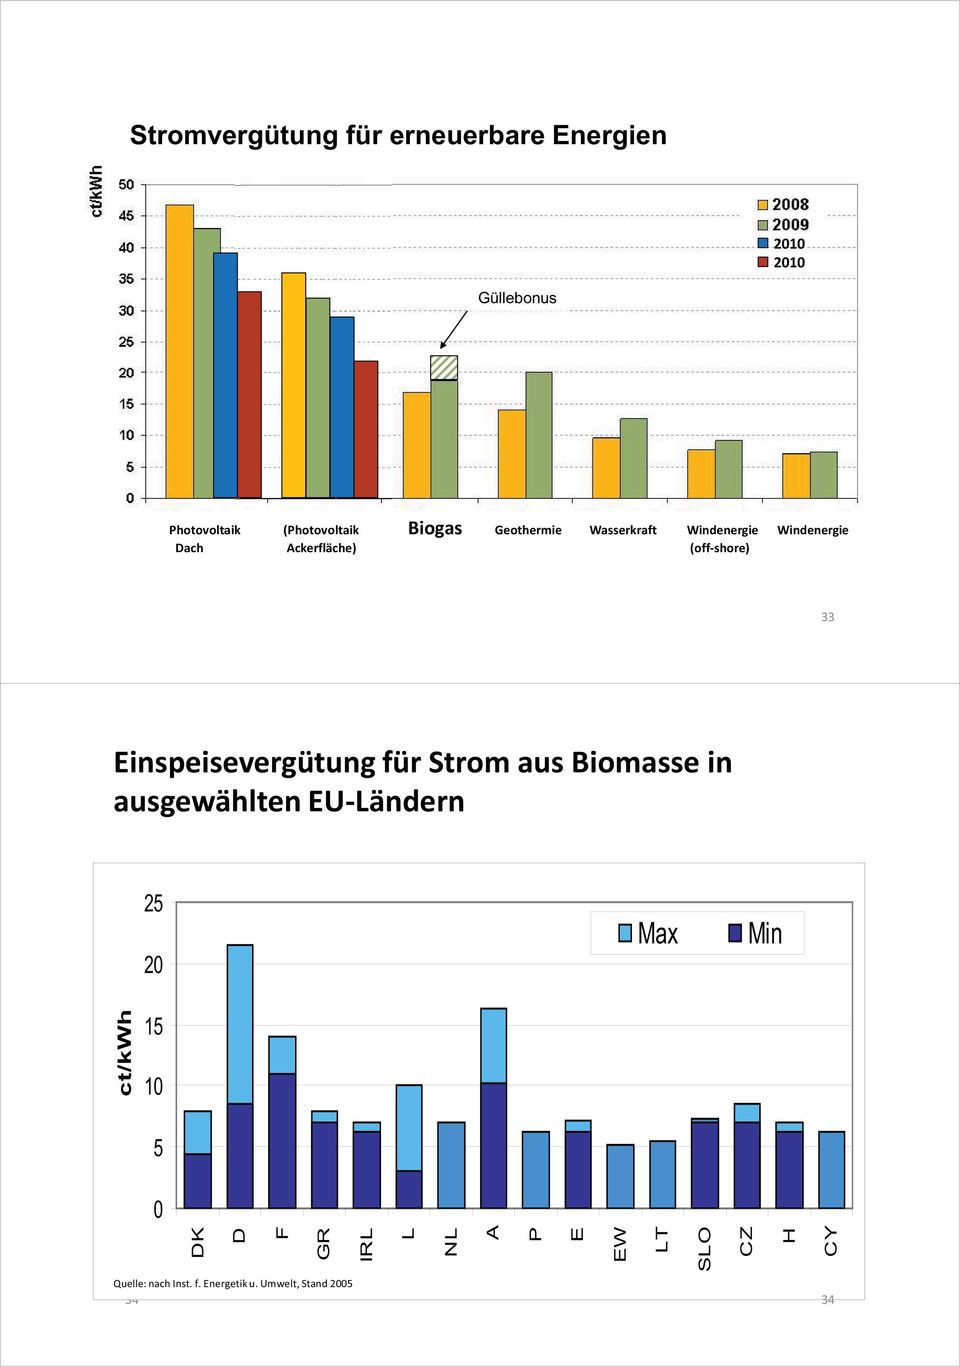 Einspeisevergütung für Strom aus Biomasse in ausgewählten EU-Ländern 25 2 Max Min ct/kwh 15